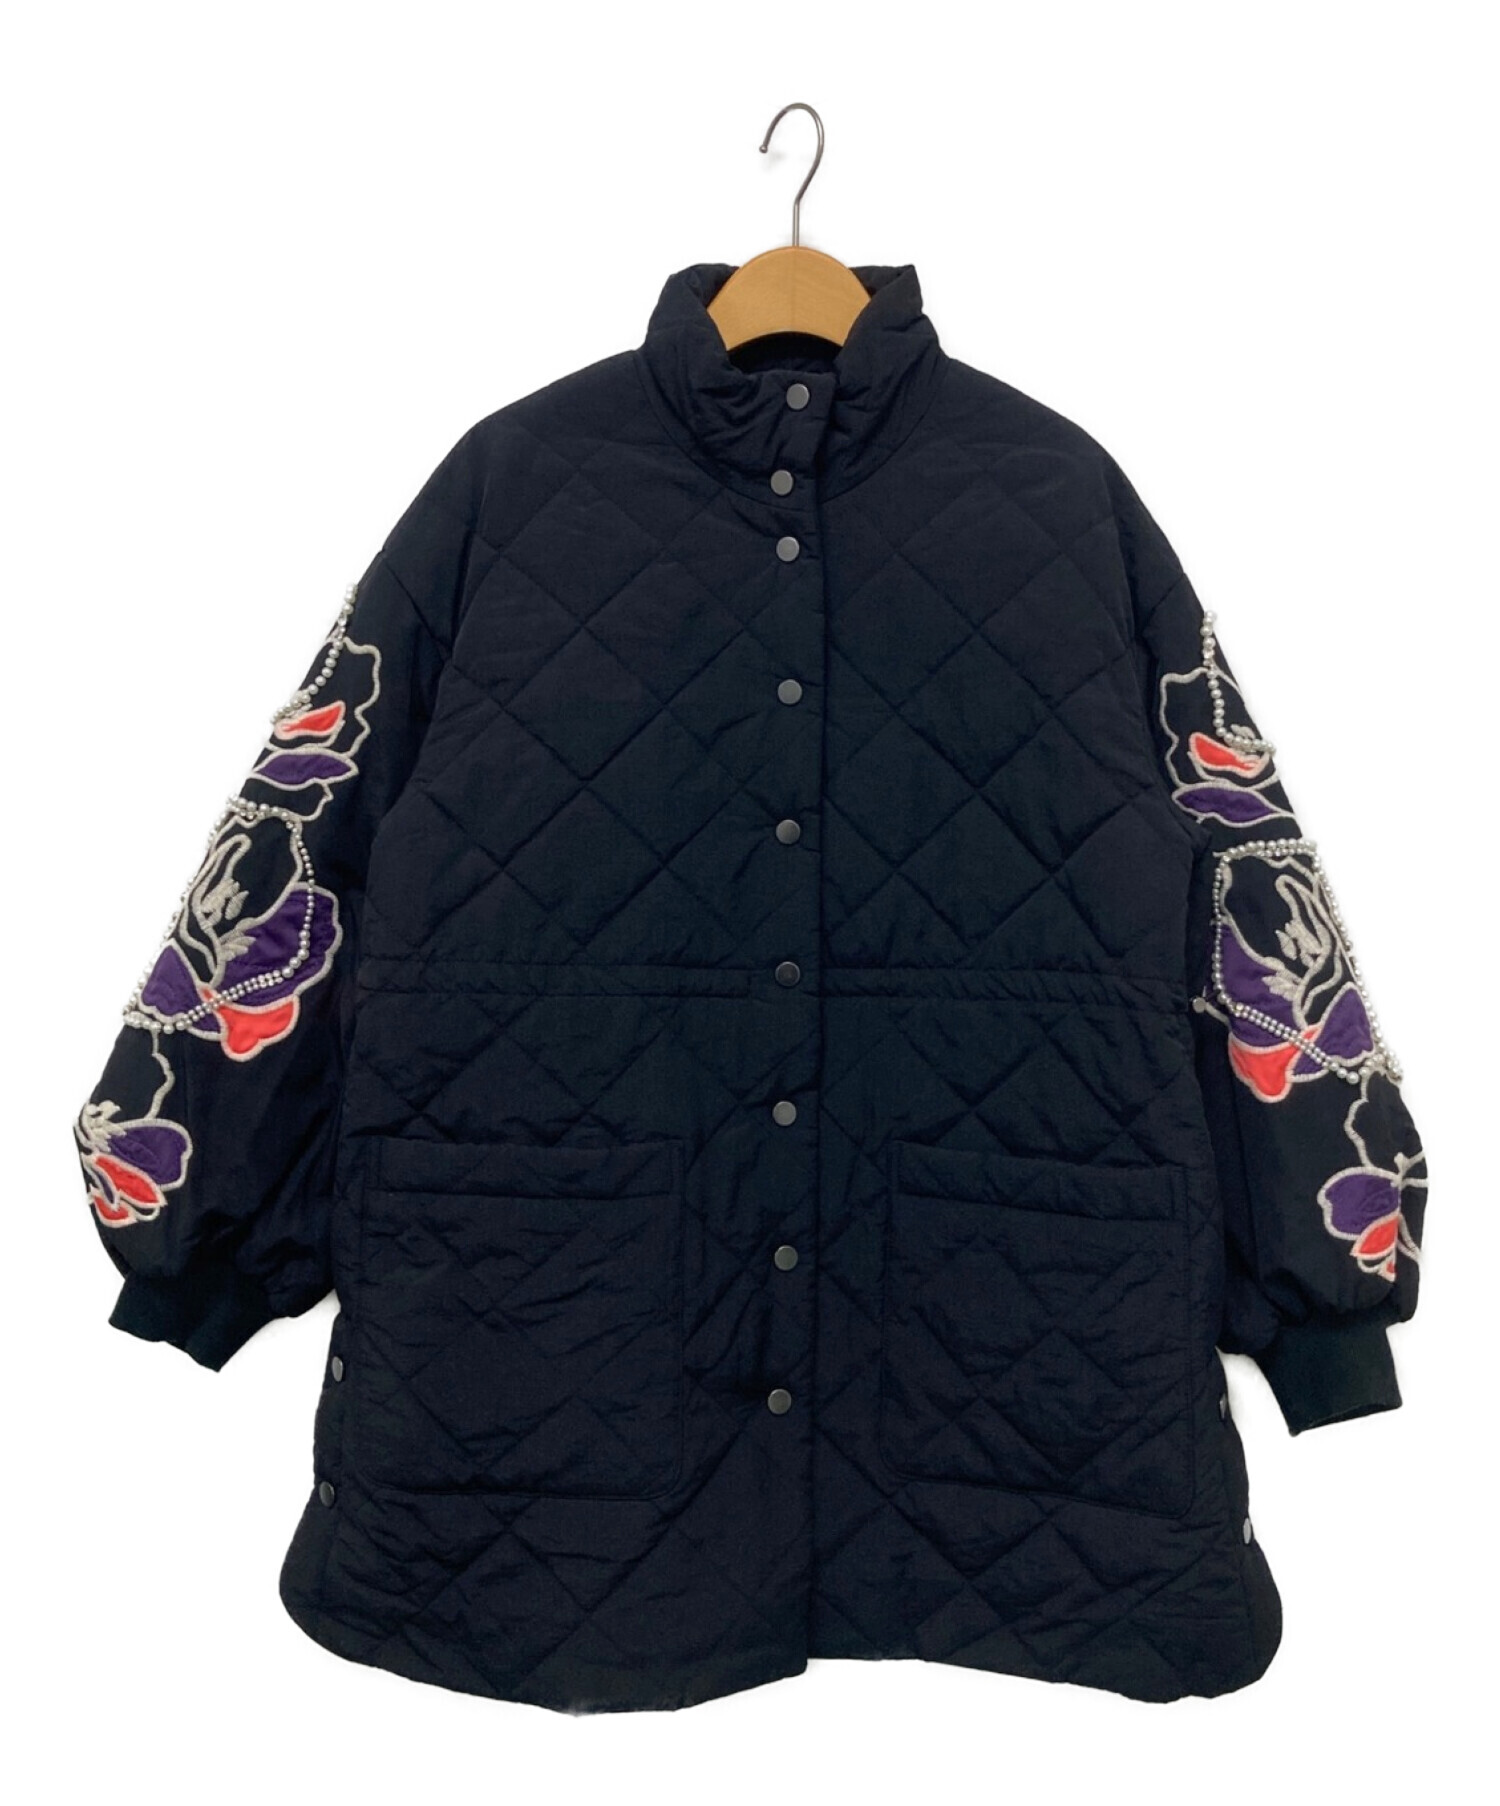 GRACE CONTINENTAL (グレースコンチネンタル) パフ刺繍キルトジャケット ブラック サイズ:36